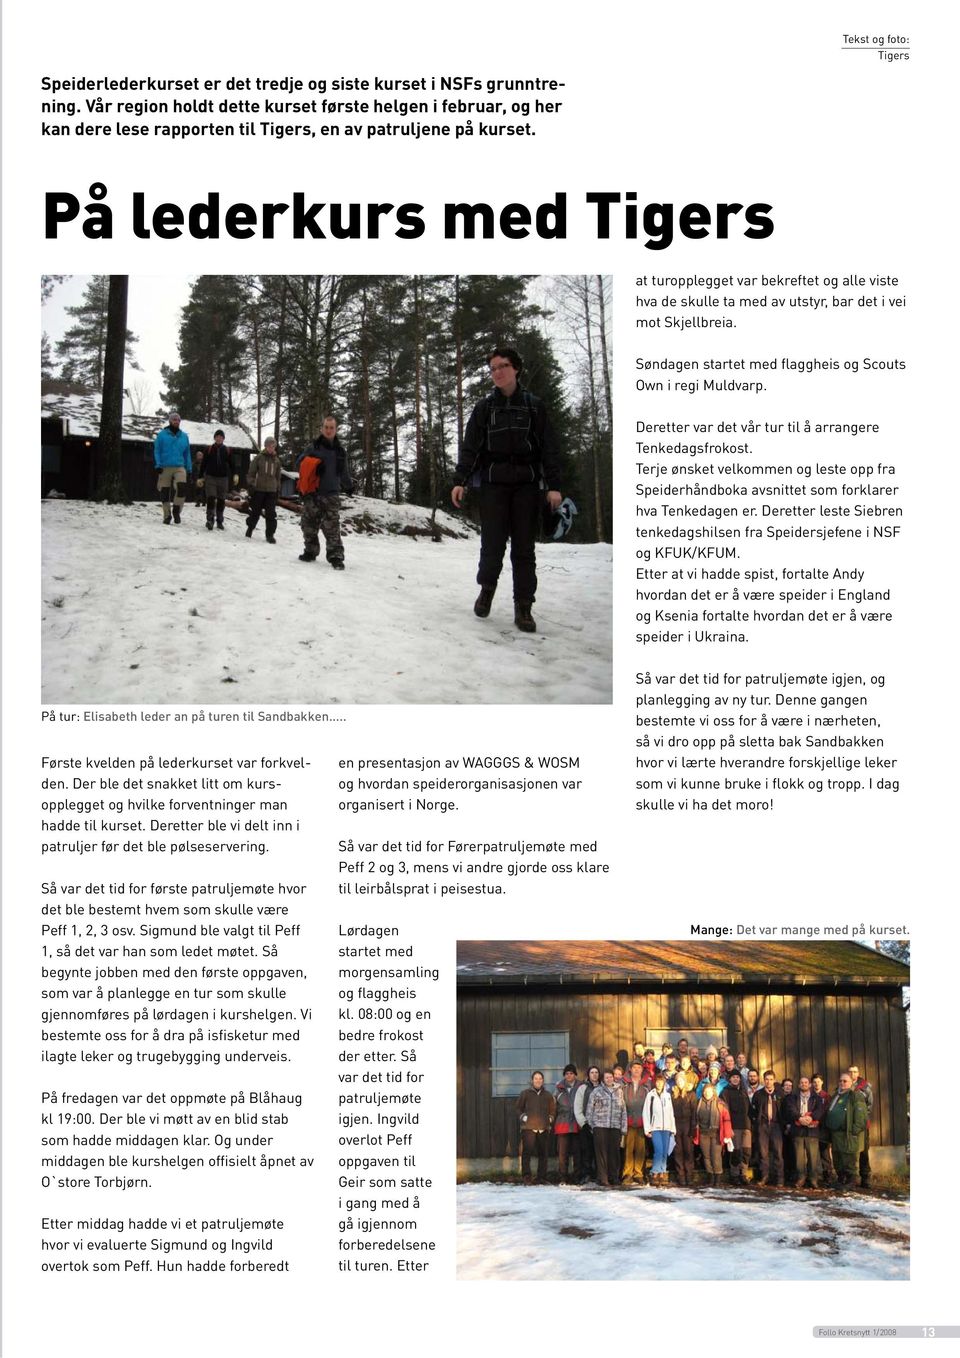 På lederkurs med Tigers at turopplegget var bekreftet og alle viste hva de skulle ta med av utstyr, bar det i vei mot Skjellbreia. Søndagen startet med flaggheis og Scouts Own i regi Muldvarp.